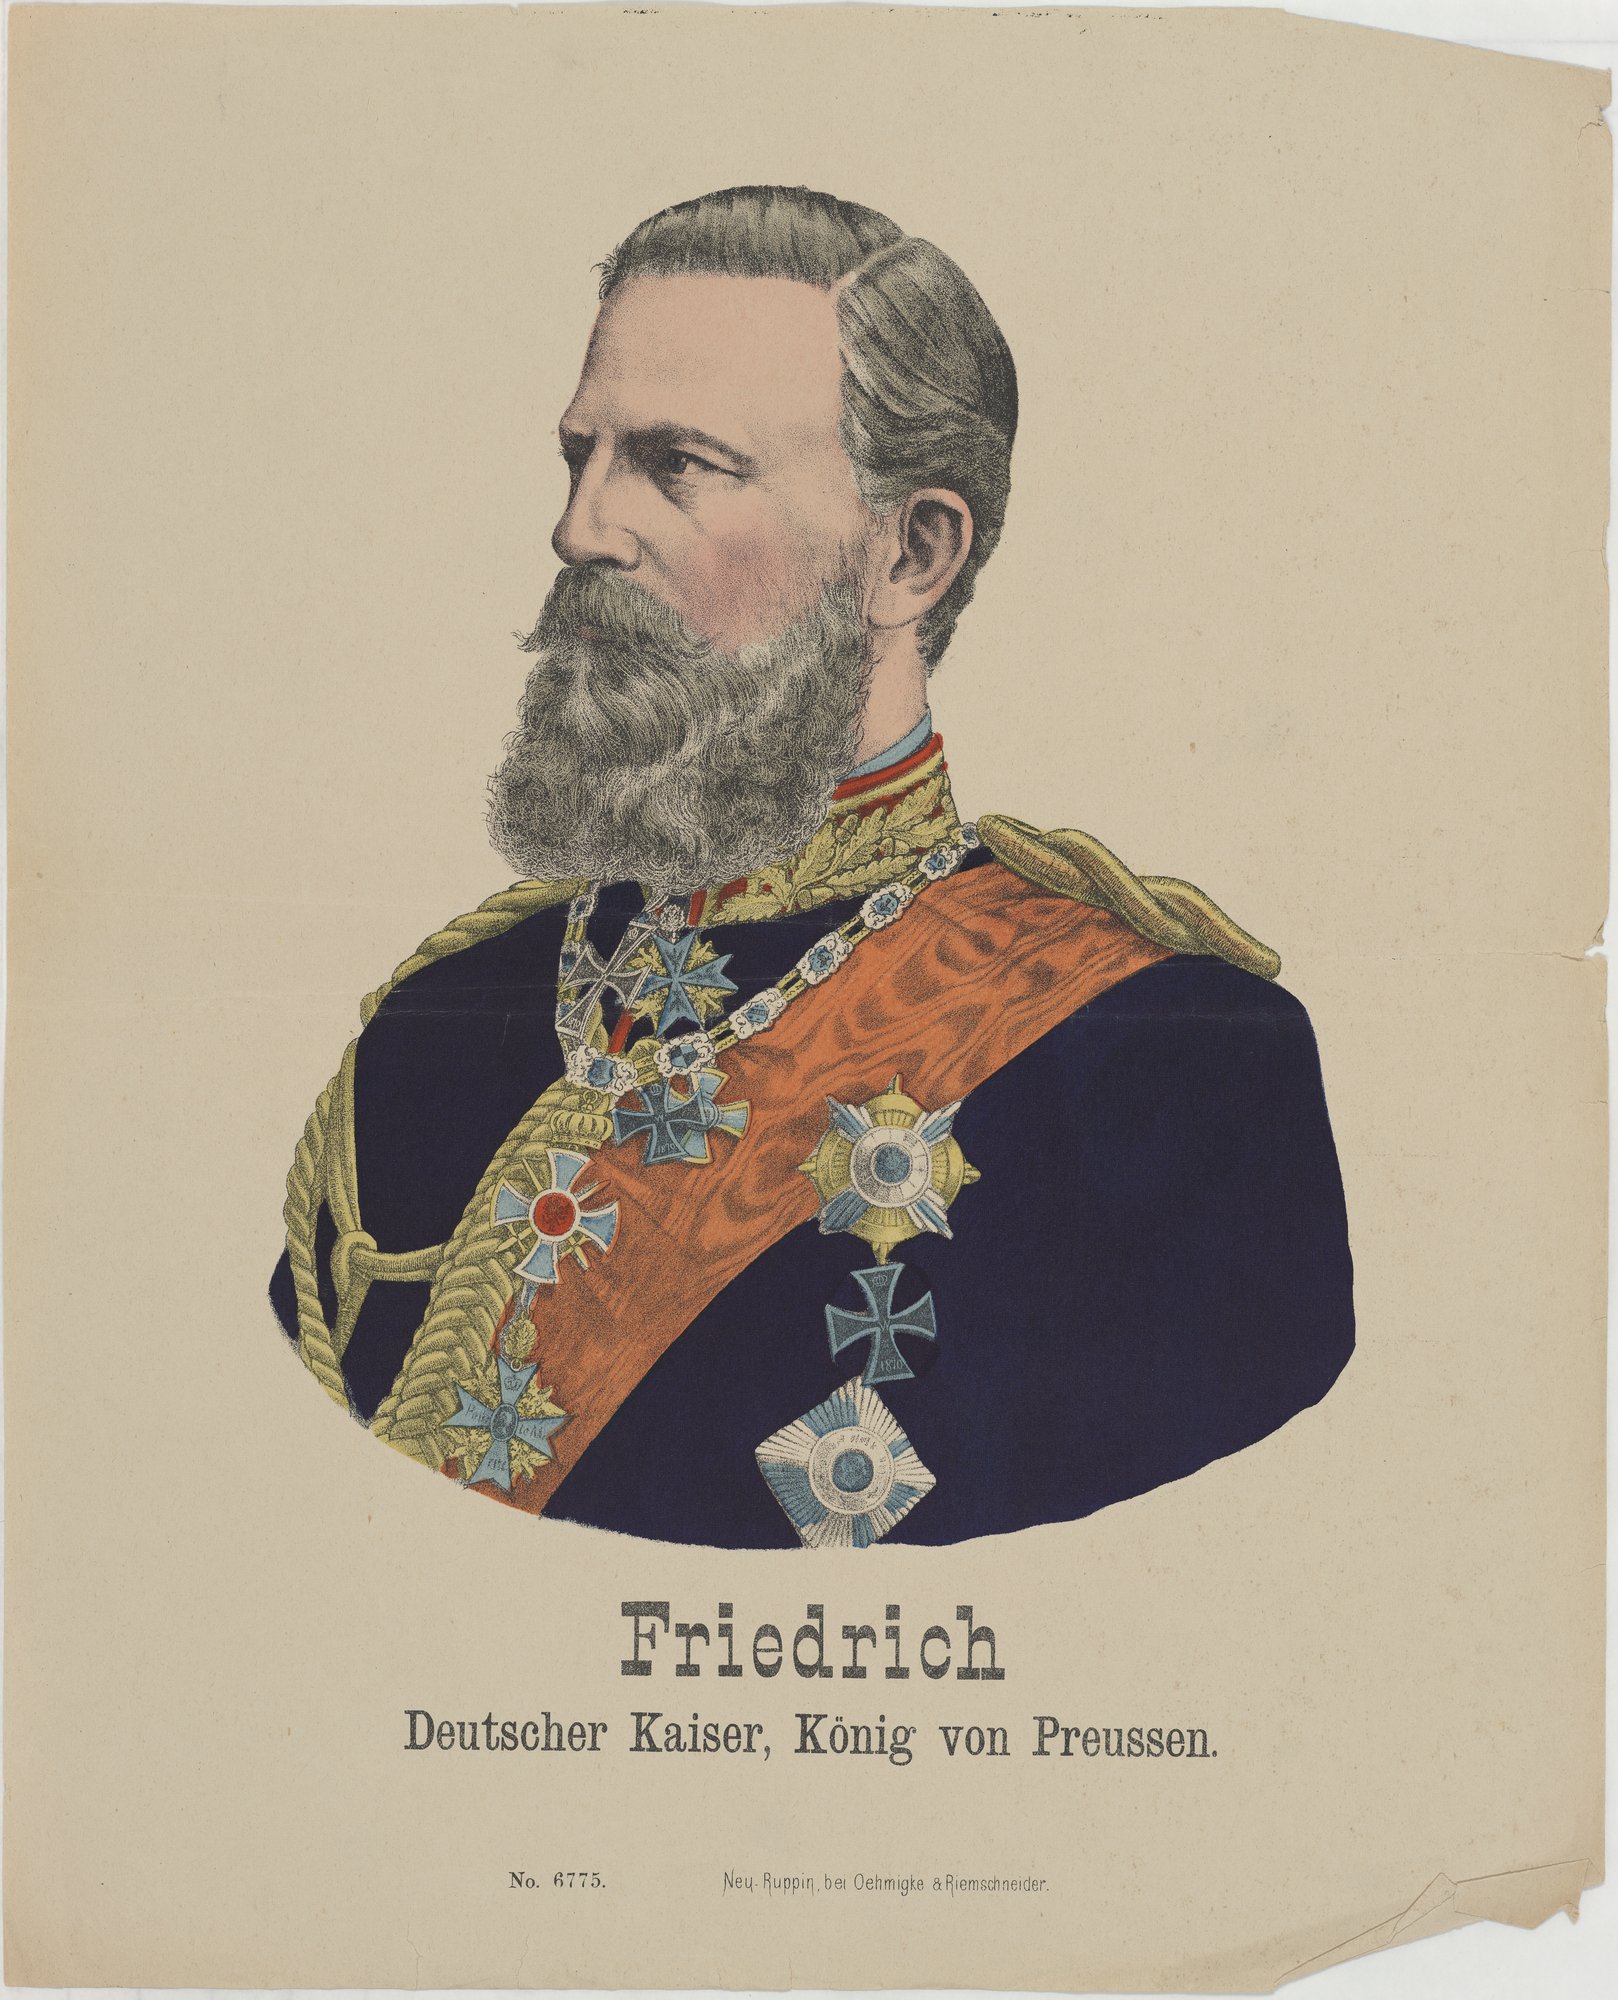 Friedrich/ Deutscher Kaiser, König von Preussen. (Kulturstiftung Sachsen-Anhalt Public Domain Mark)